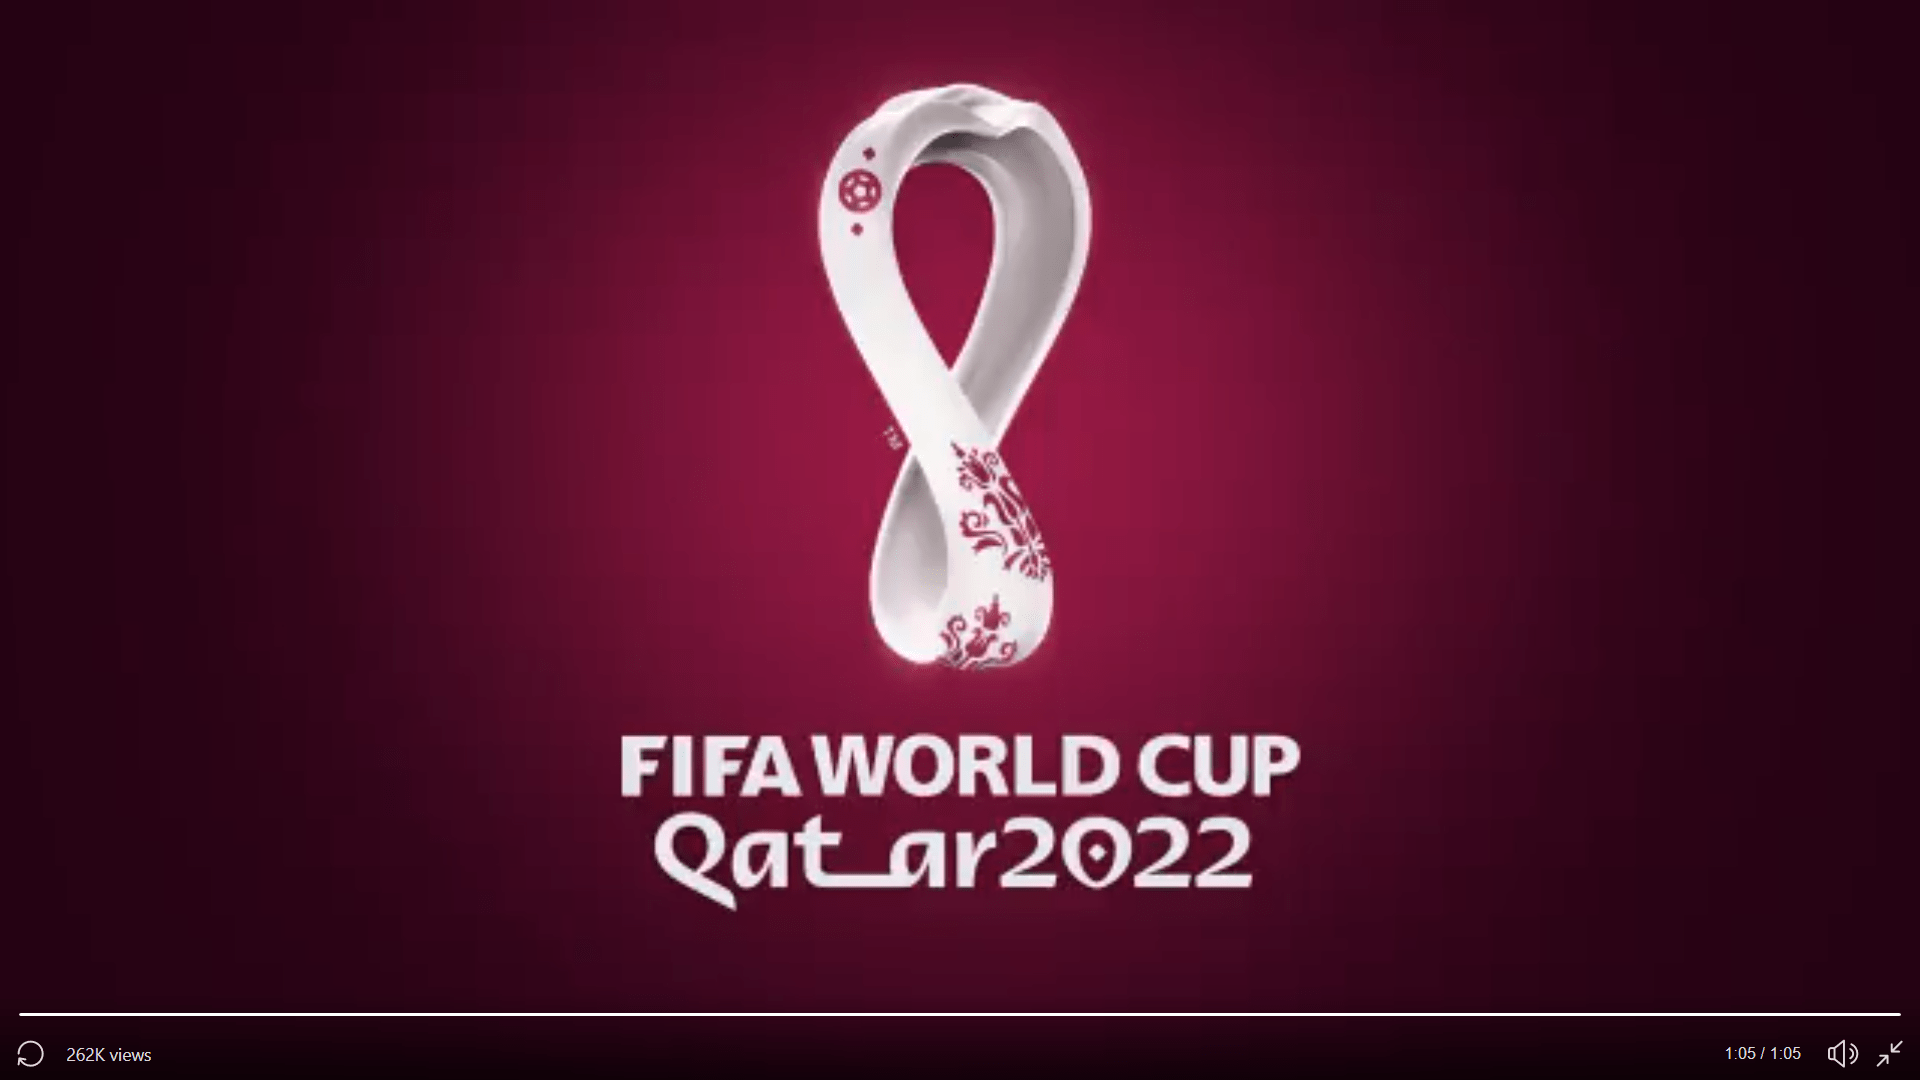 L'ambassadeur de la coupe du monde, khalid salman, ancien footballeur international qatari, n'a pas mâché ses mots sur l'homosexualité dans une . Coupe du monde de Qatar 2022 : le logo dÃ©voilÃ© simultanÃ©ment mardi dans